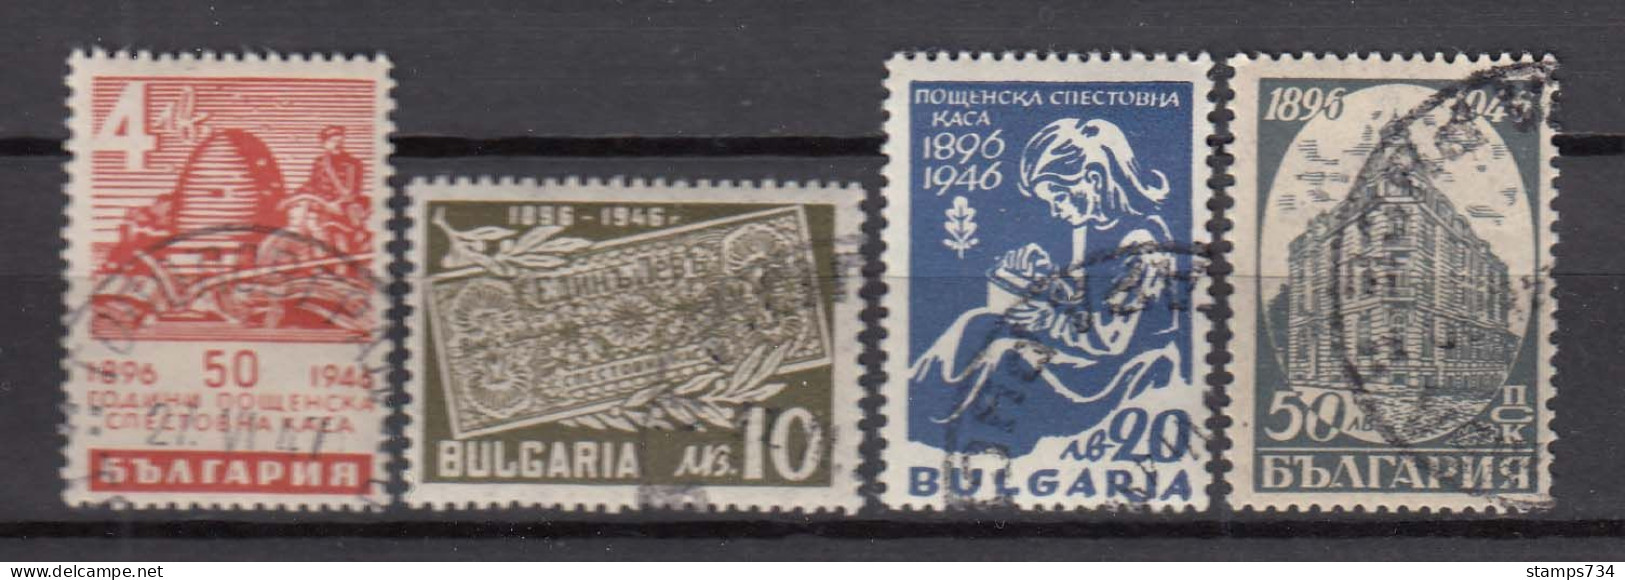 Bulgaria 1946 - 50 Jahre Bulgarische Postsparkasse, Mi-Nr. 524/27, Used (O) - Gebruikt